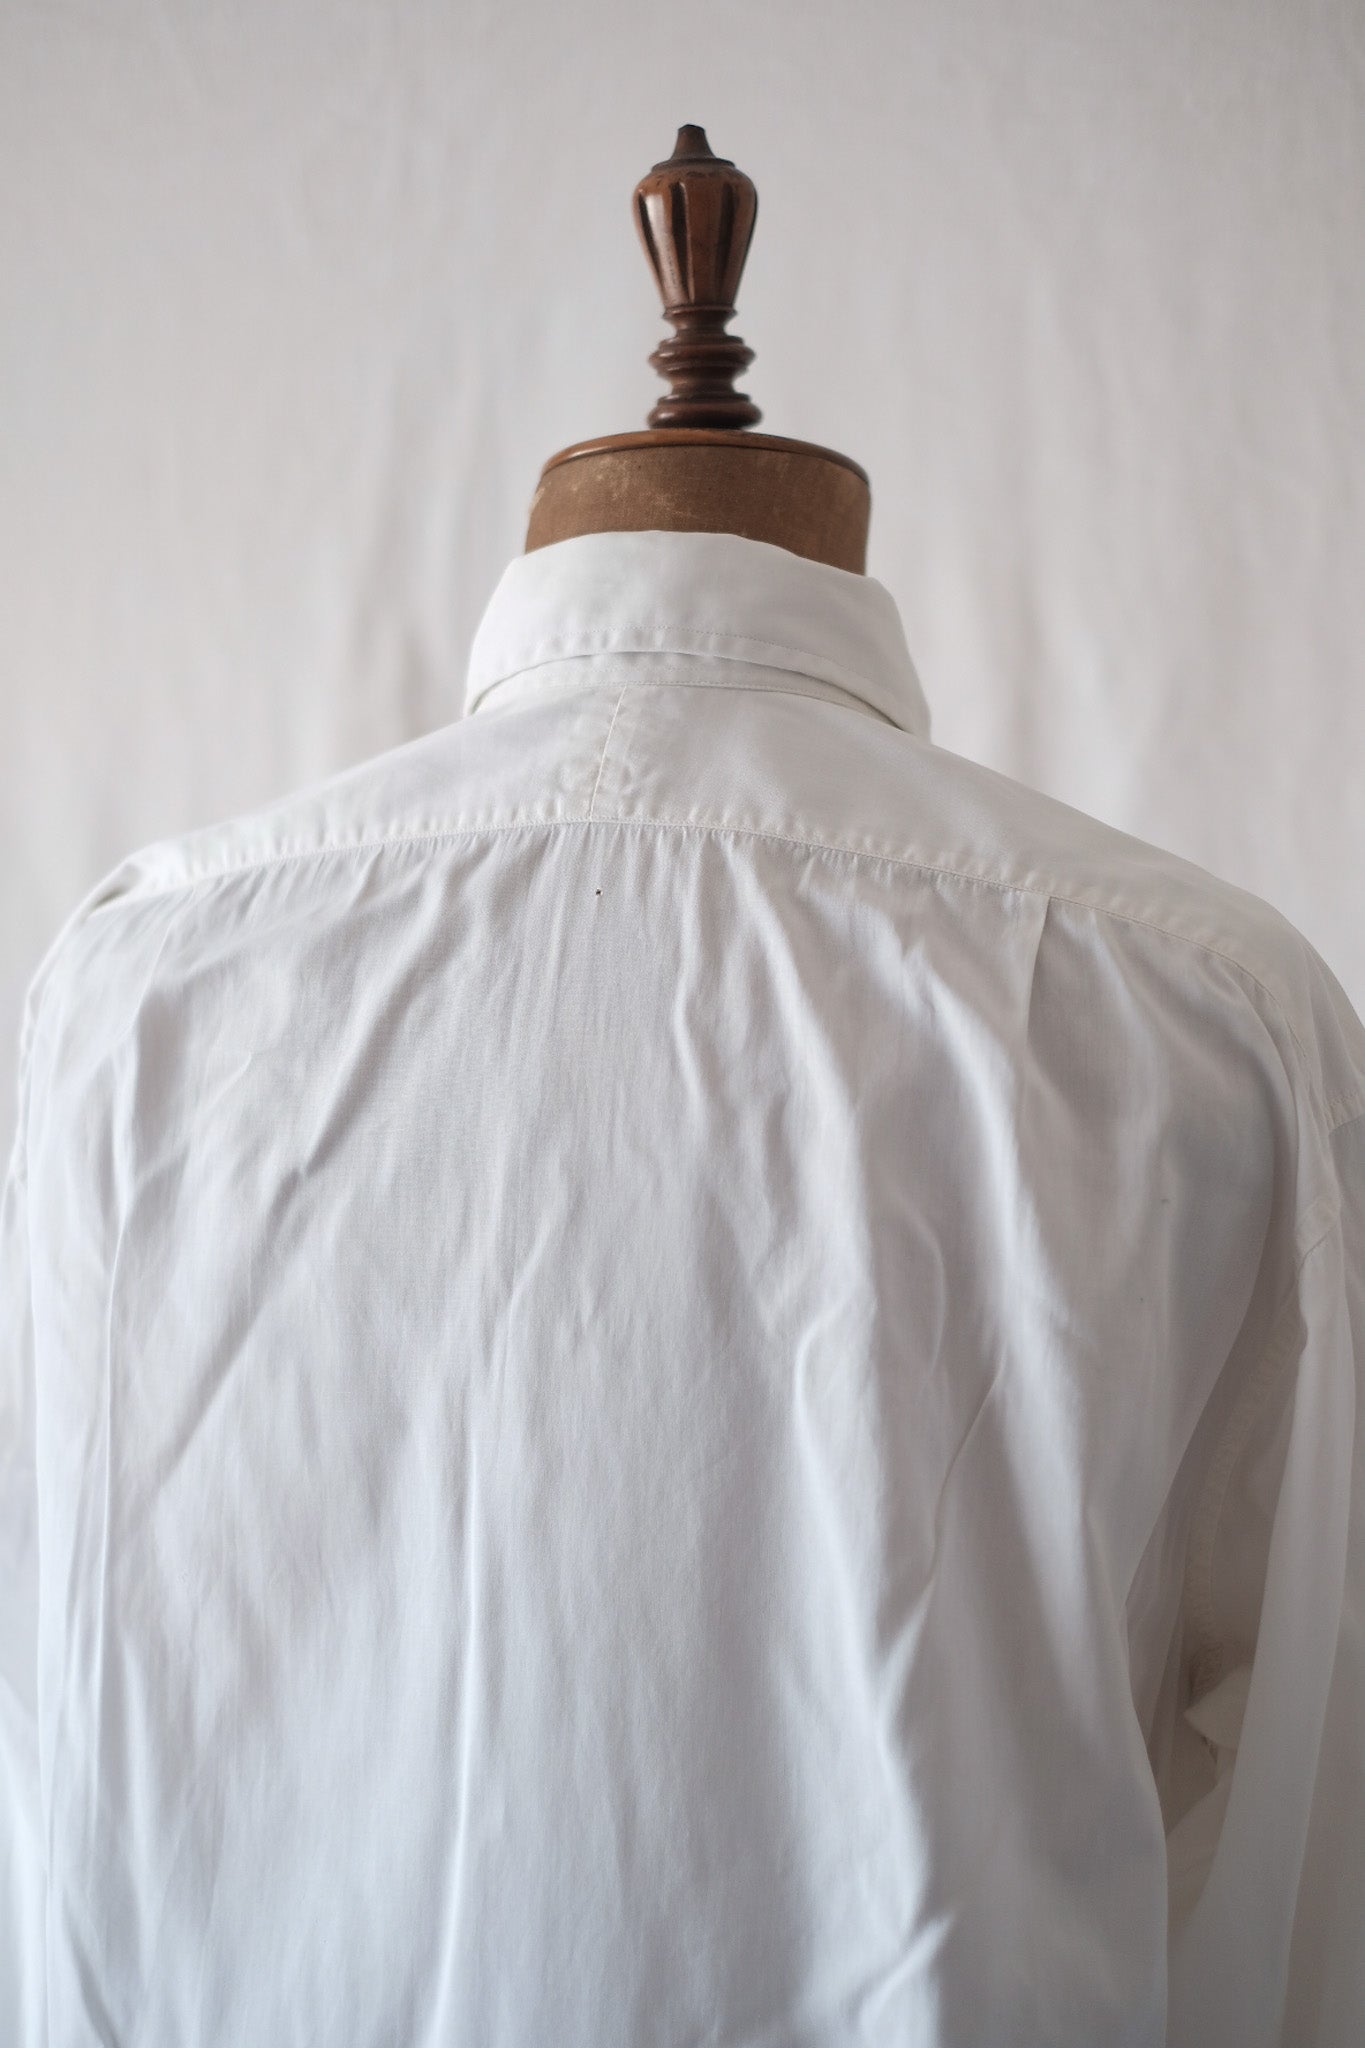 [~ 40 '] 영국의 빈티지 드레스 셔츠